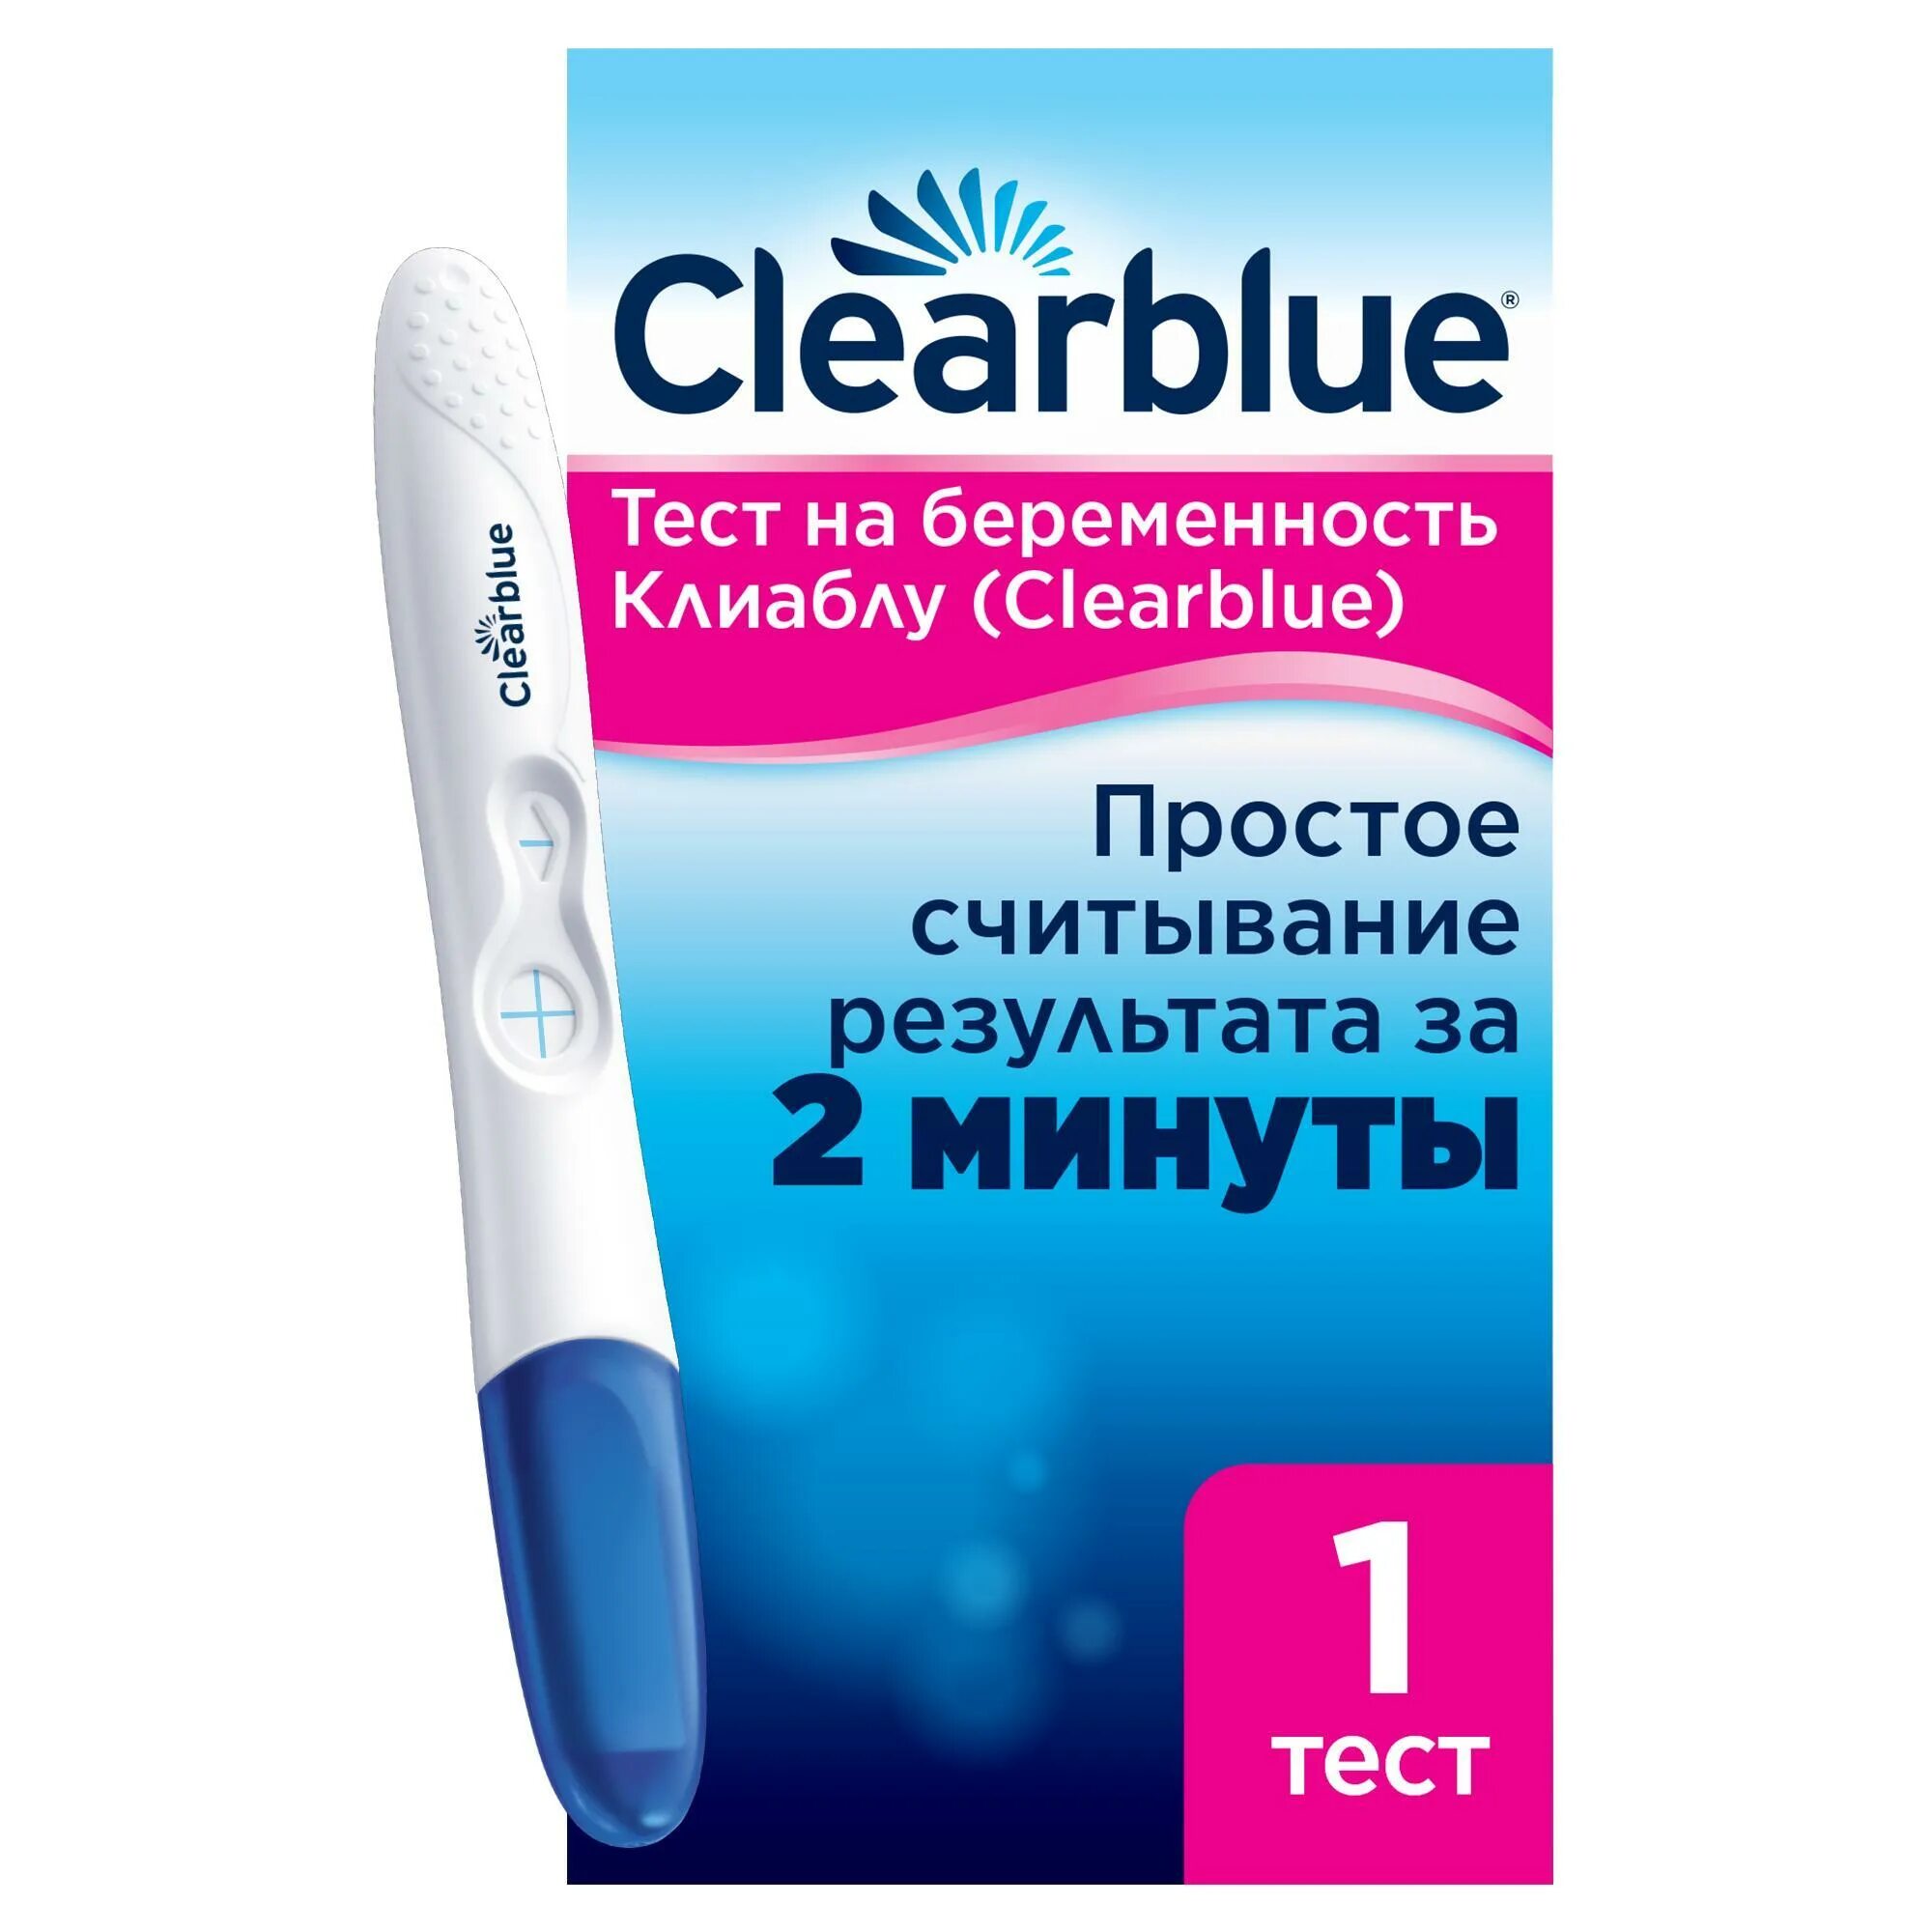 Результаты теста на беременность clearblue. Clearblue Plus 1 шт. Тест клиаблу (Clearblue). Клиаблу easy n2. Clearblue тест.